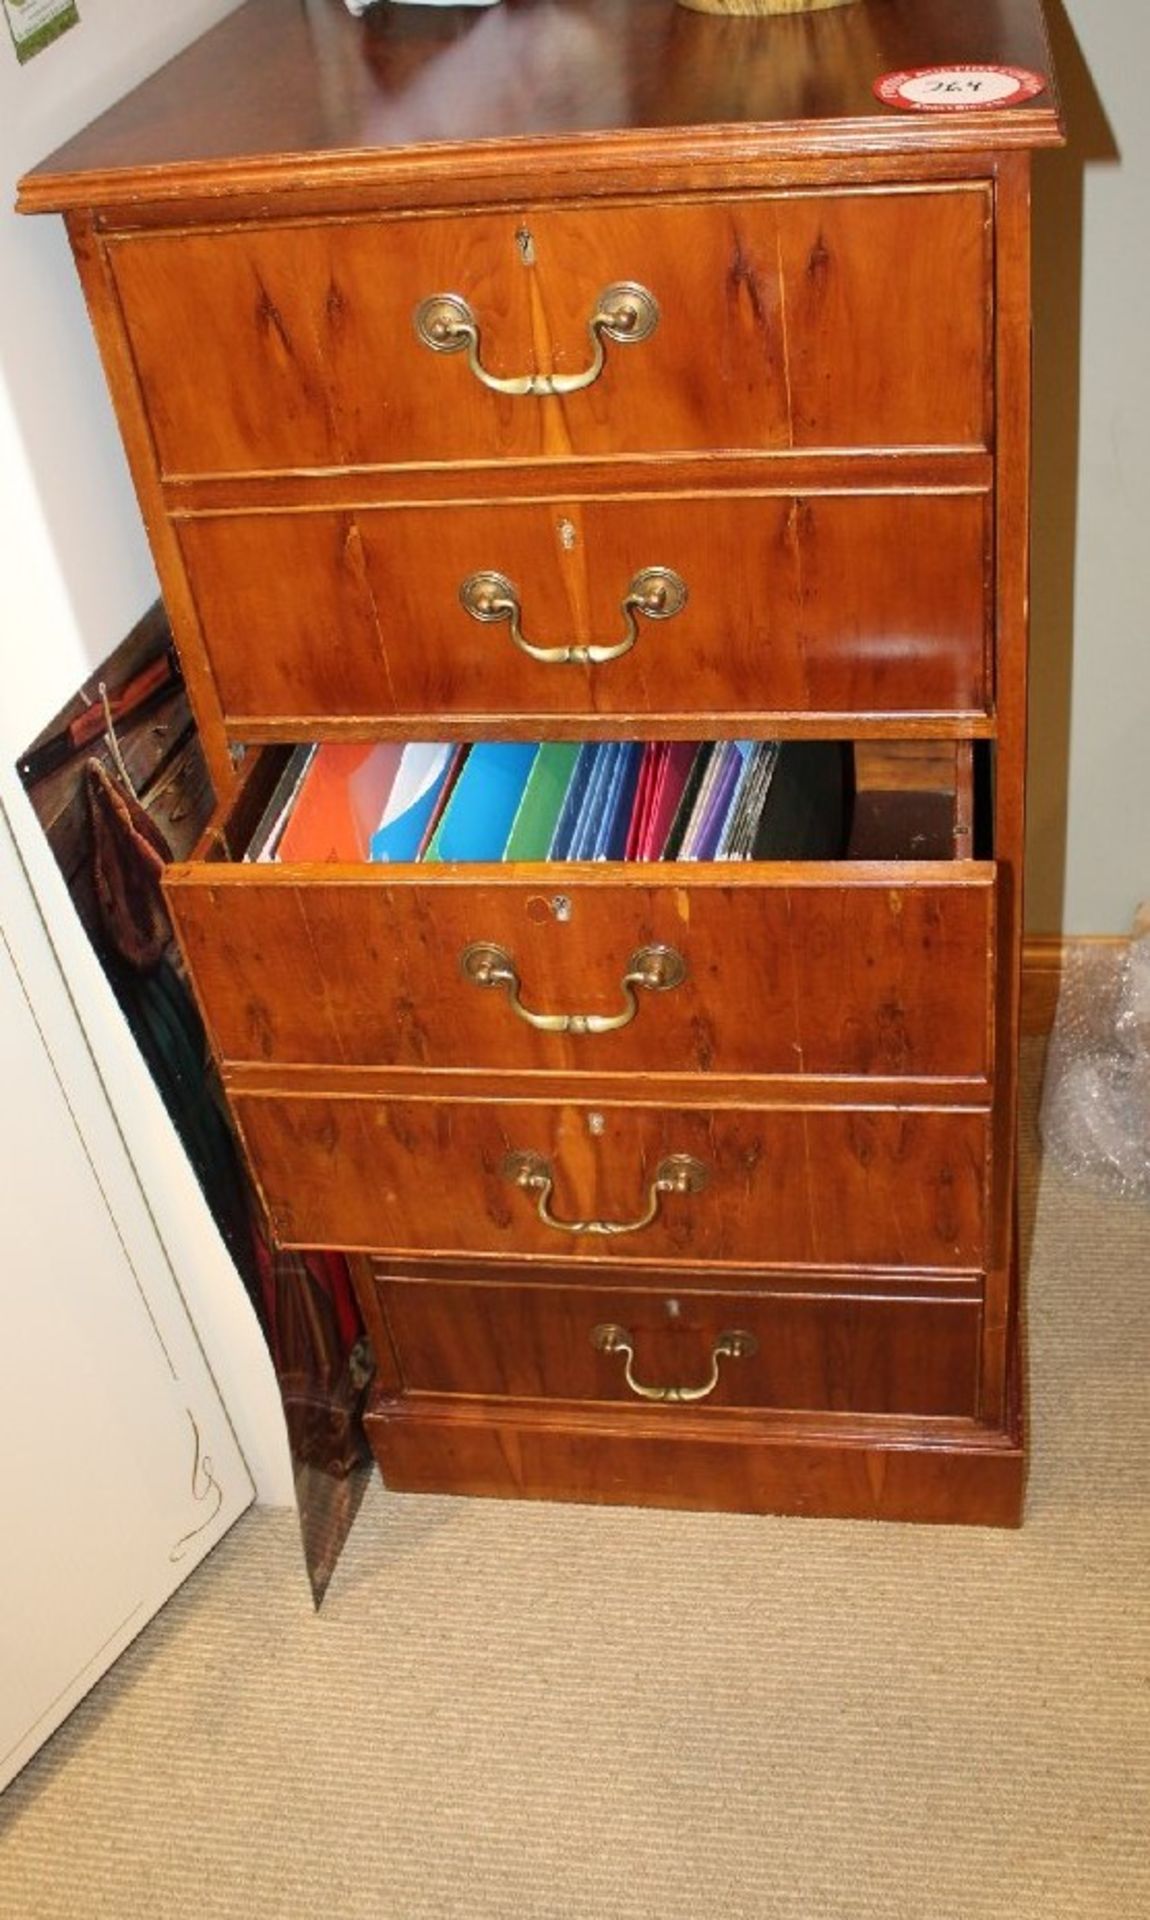 Three Drawer Wooden Filing Cabinet, Locking (no key)